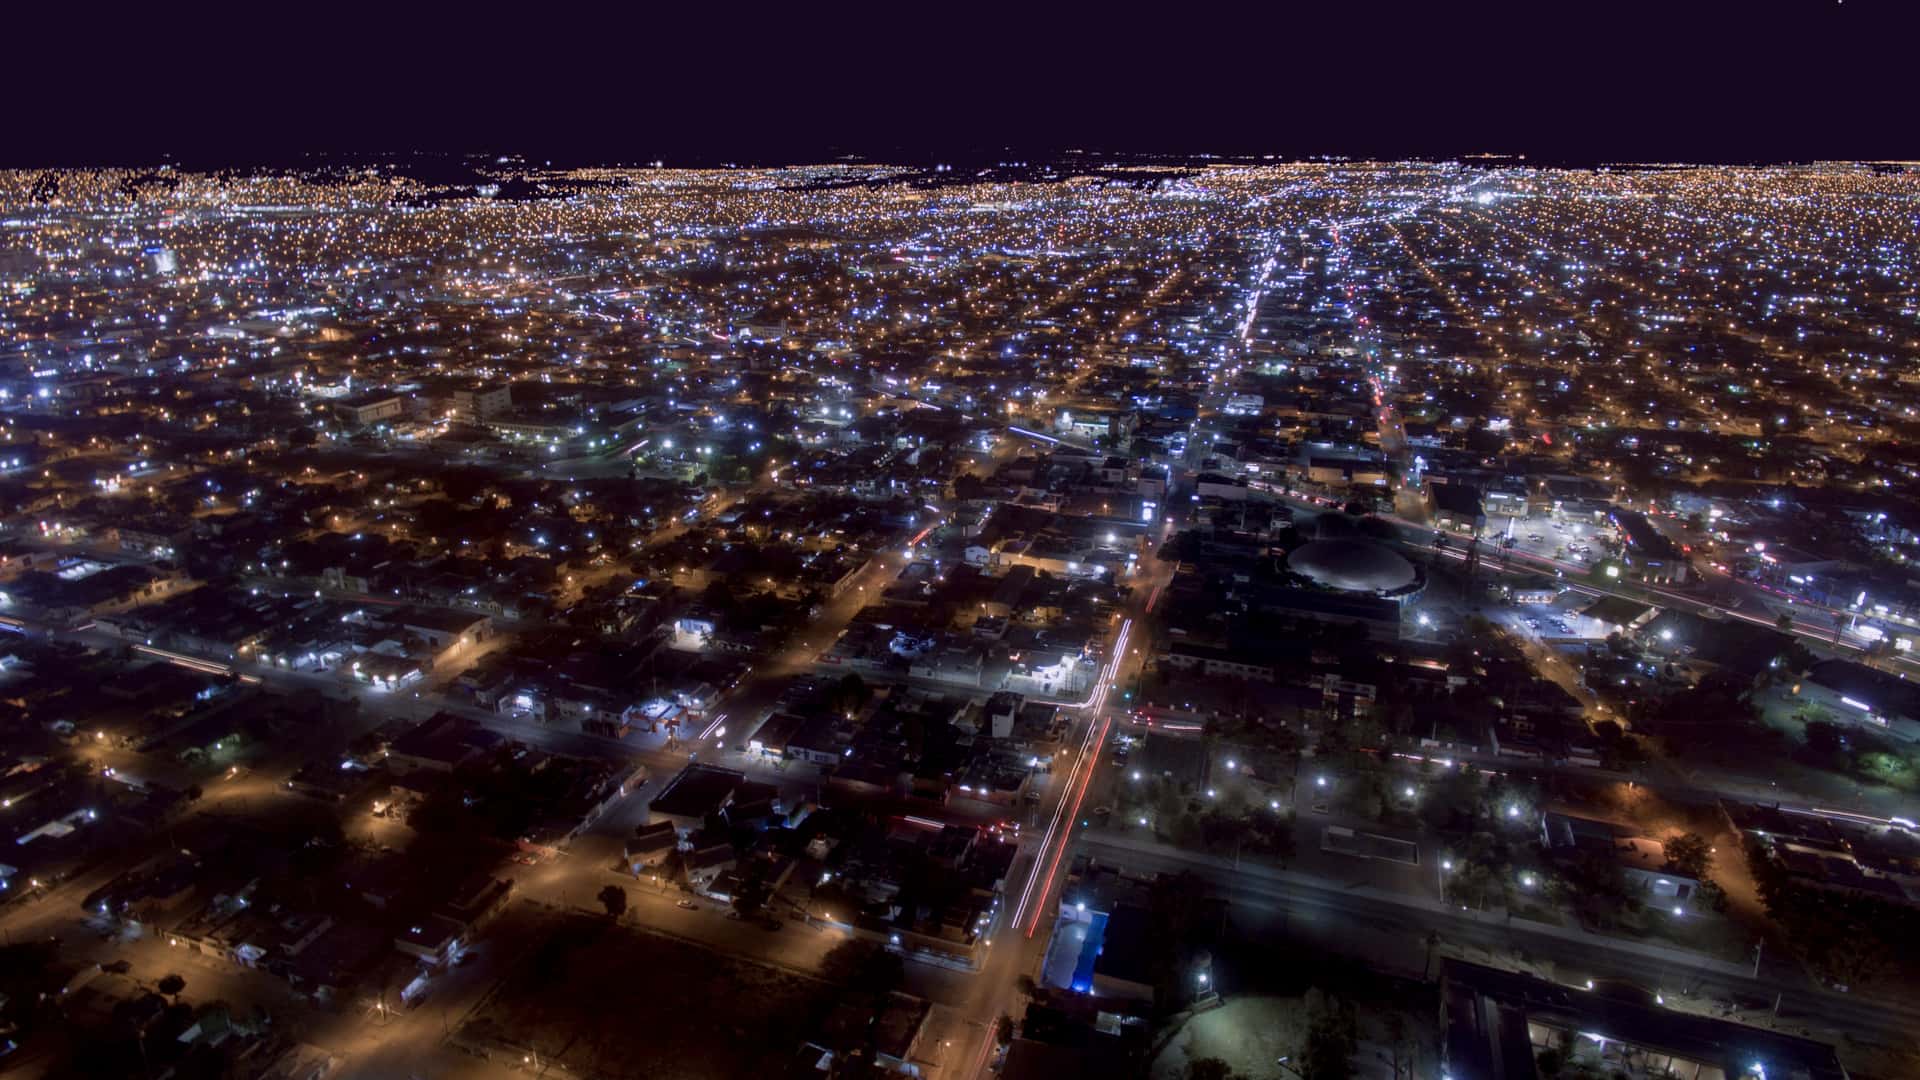 Vista aerea nocturna de la ciudad de Hermosillo donde se pueden encontrar sucursales de telcel